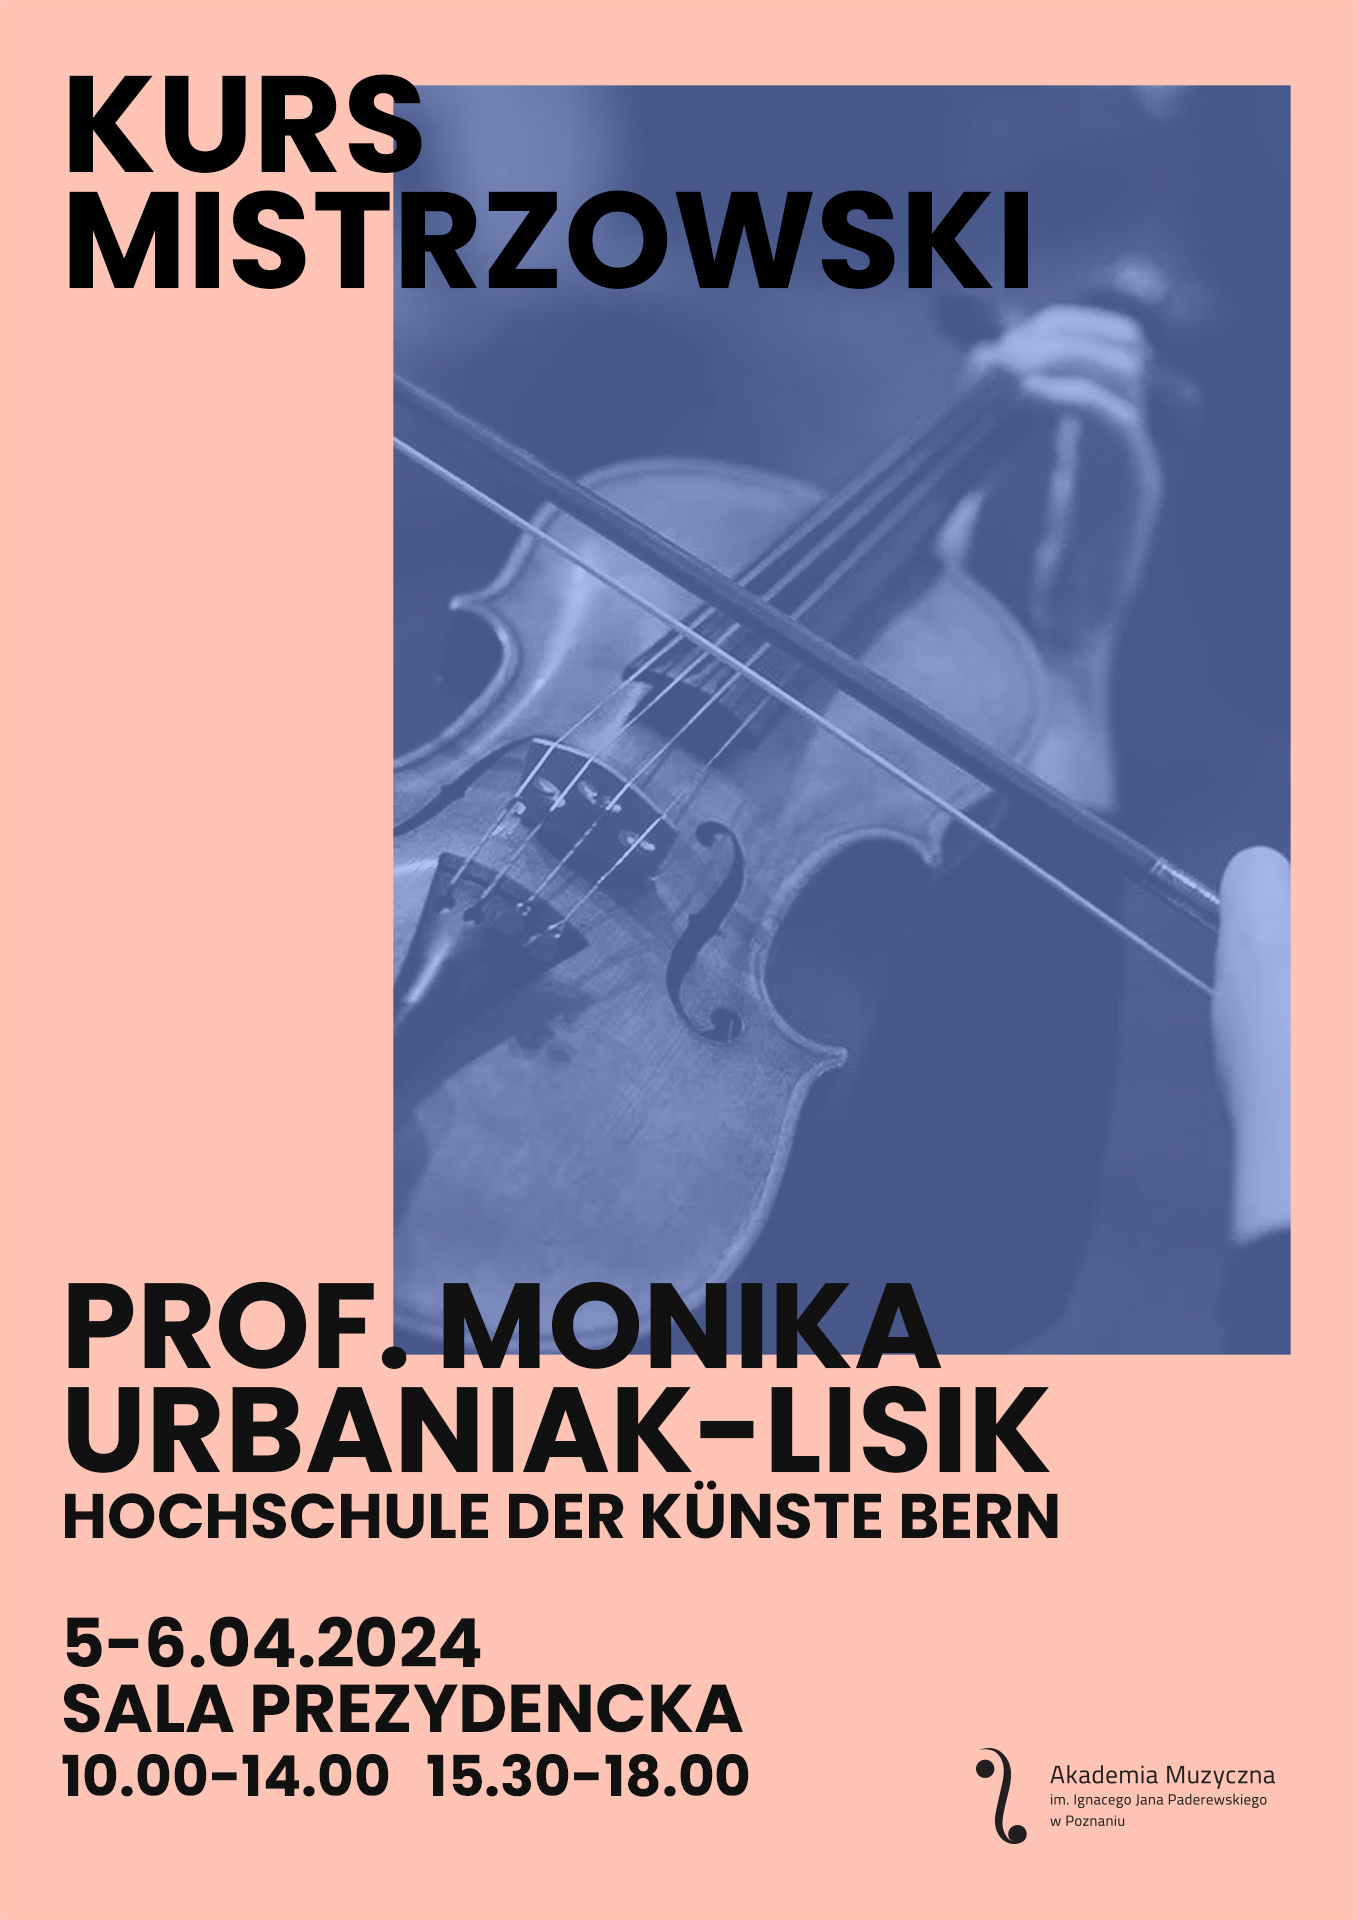 Afisz zawiera informacje na temat kursu mistrzowskiego prof. Moniki Urbaniak-Lisik w kwietniu 2024